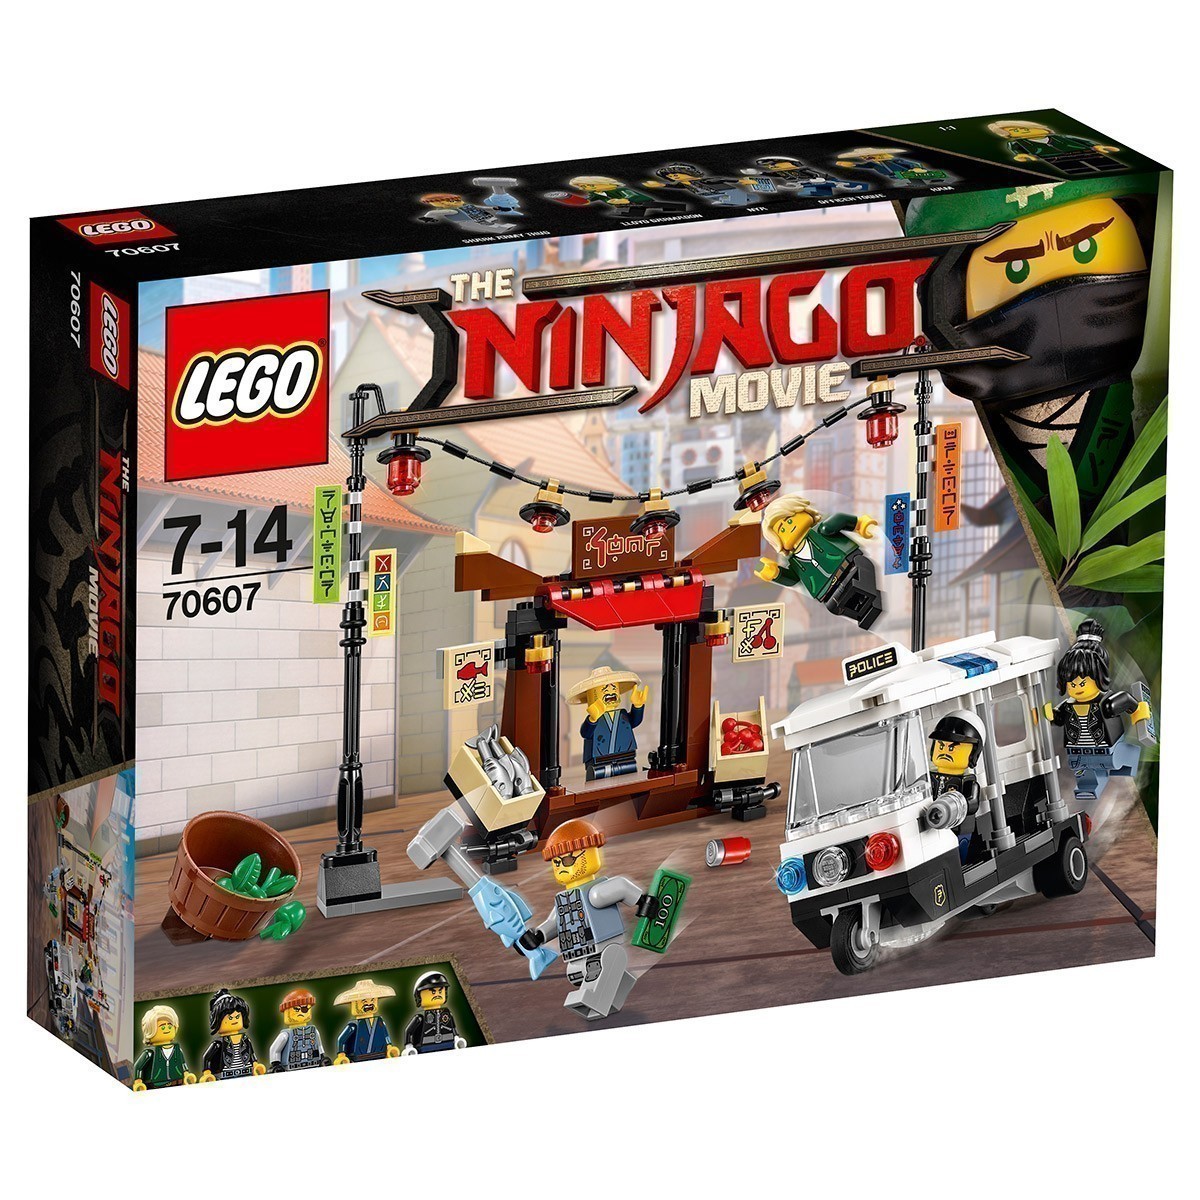 LEGO - The Ninjago Movie 70607 - Ninjago City Chase